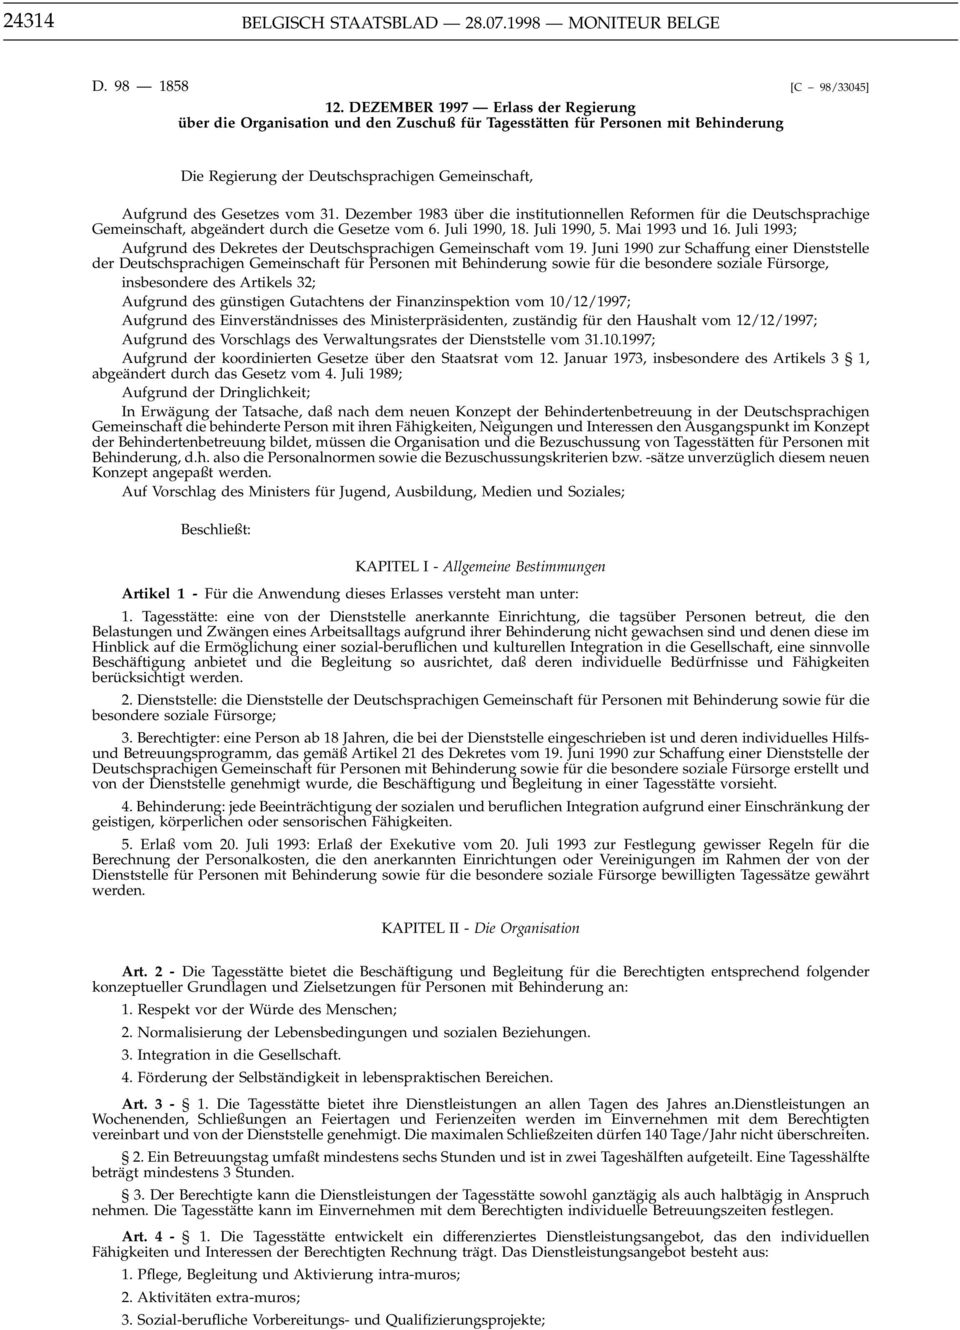 Gesetzes vom 31. Dezember 1983 über die institutionnellen Reformen für die Deutschsprachige Gemeinschaft, abgeändert durch die Gesetze vom 6. Juli 1990, 18. Juli 1990, 5. Mai 1993 und 16.